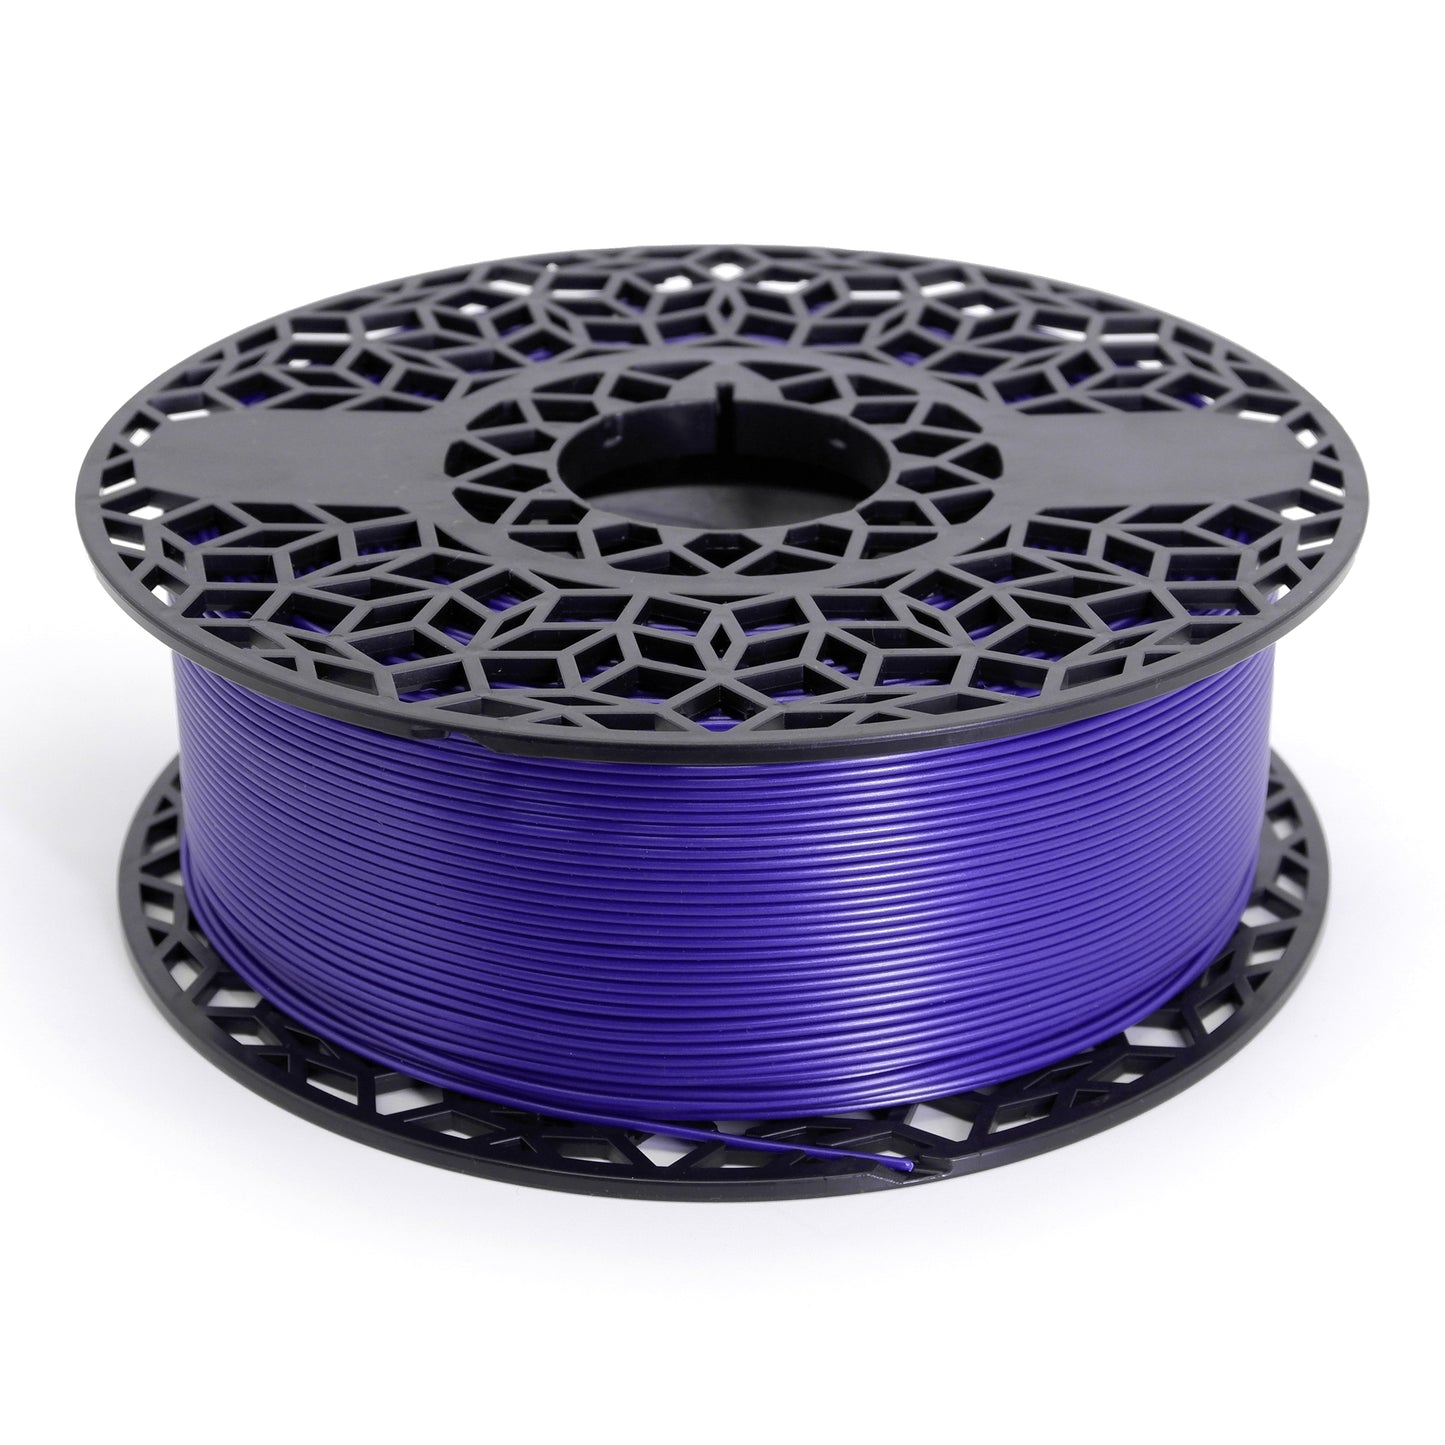 Uzy Premium PLA Filament 1.75mm ± 0.01mm Galaxy Purple 1Kg